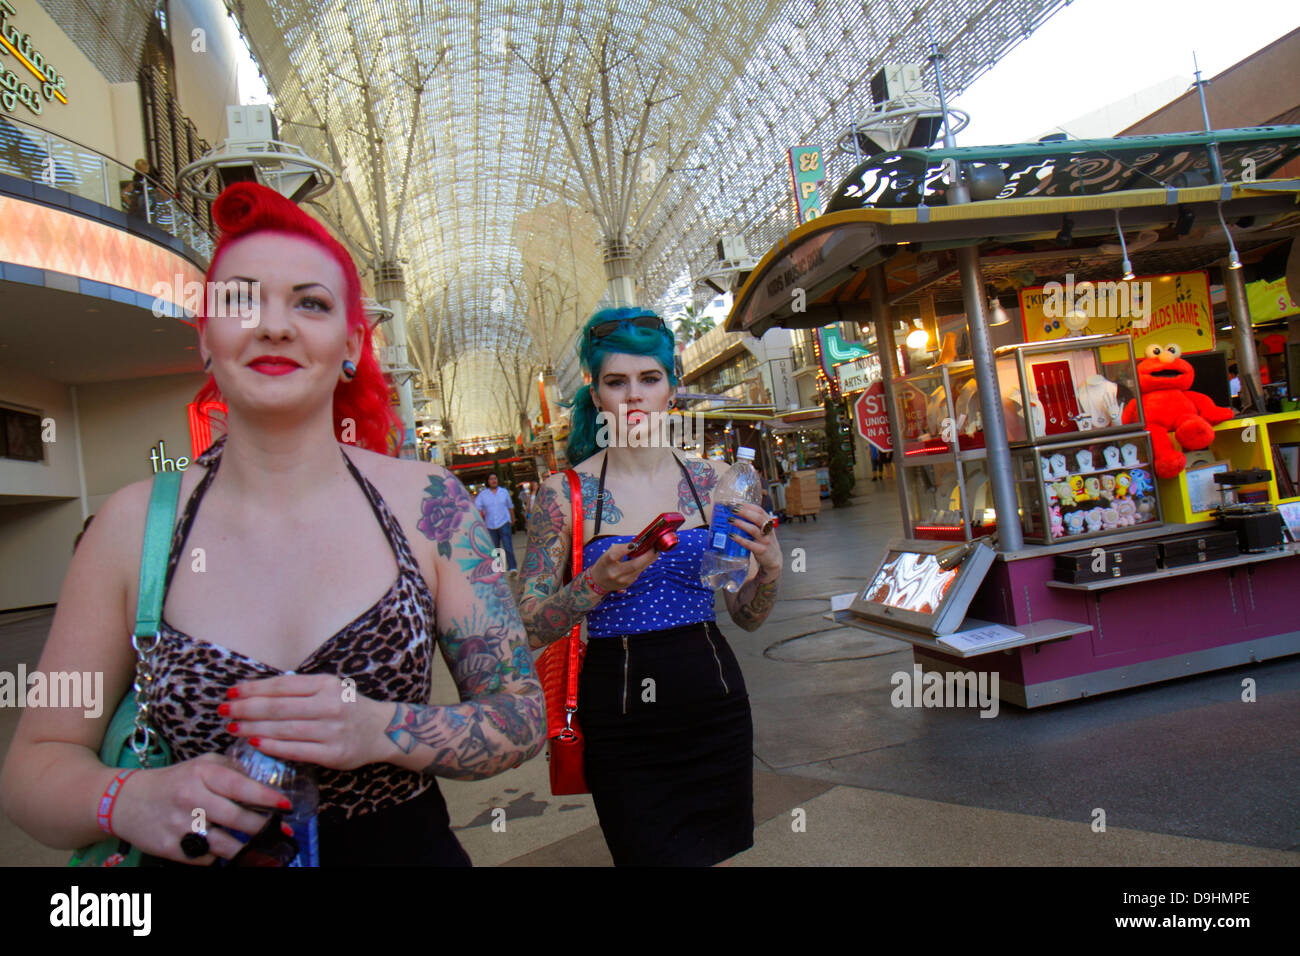 Las Vegas Nevada, Downtown, Fremont Street Experience, Fußgängerzone, Arcade, Erwachsene Erwachsene Frauen Frauen weibliche Dame, gefärbte Haare, rot, blau, Tattoos, Retro-Look, Stockfoto